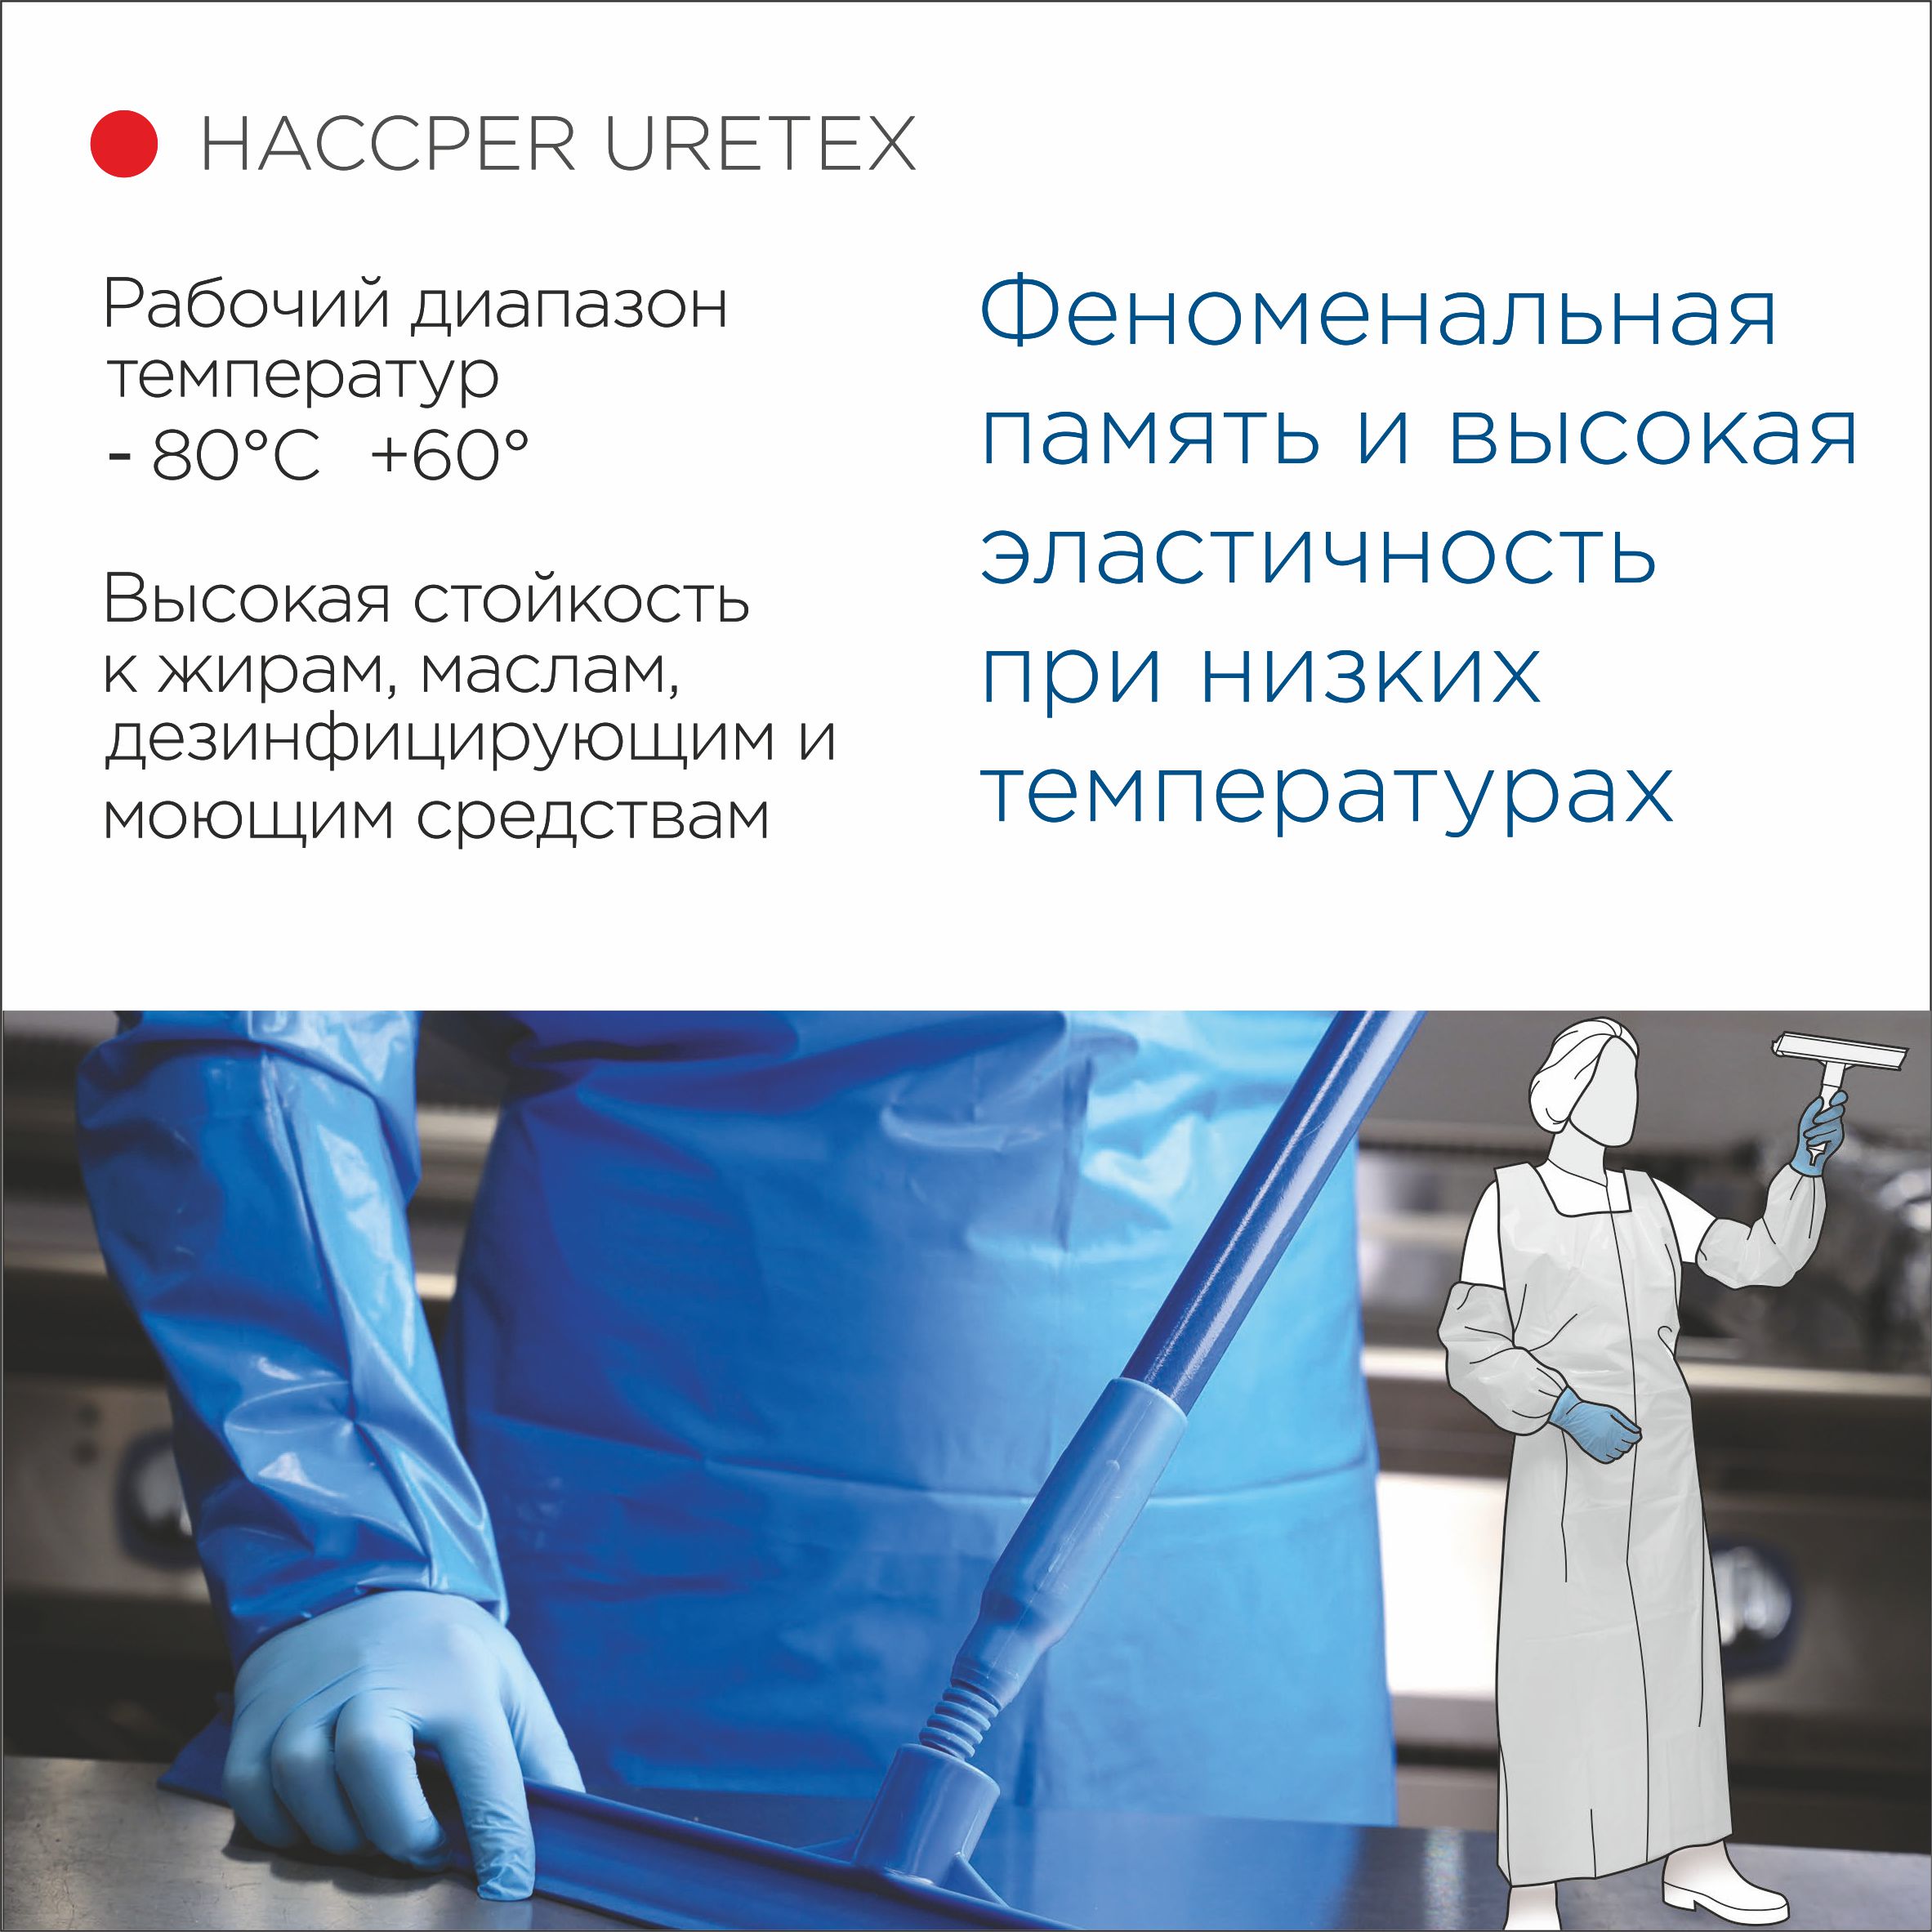 Фартук HACCPER Uretex  1500х830 мм, 150 мкм,  белый